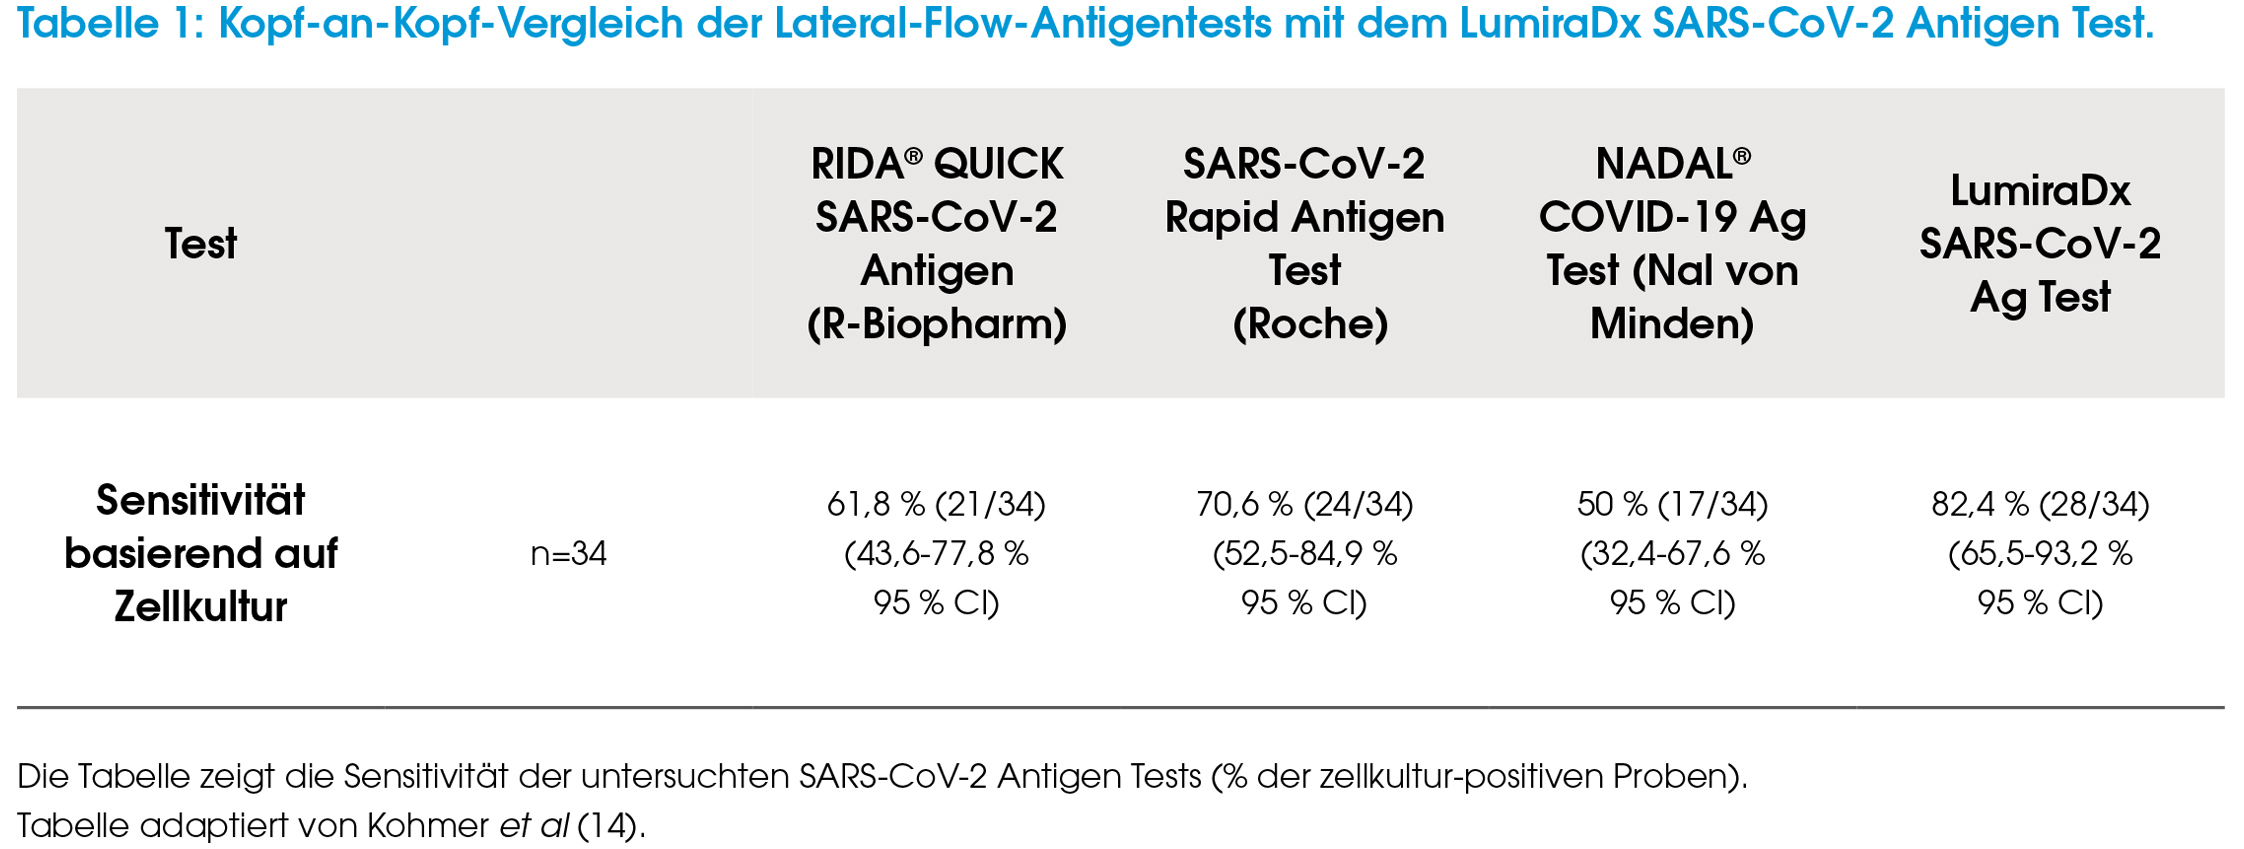 Kopf-an-Kopf-Vergleich der Lateral-Flow-Antigentests mit dem LumiraDx SARS-CoV-2 Antigen Test.